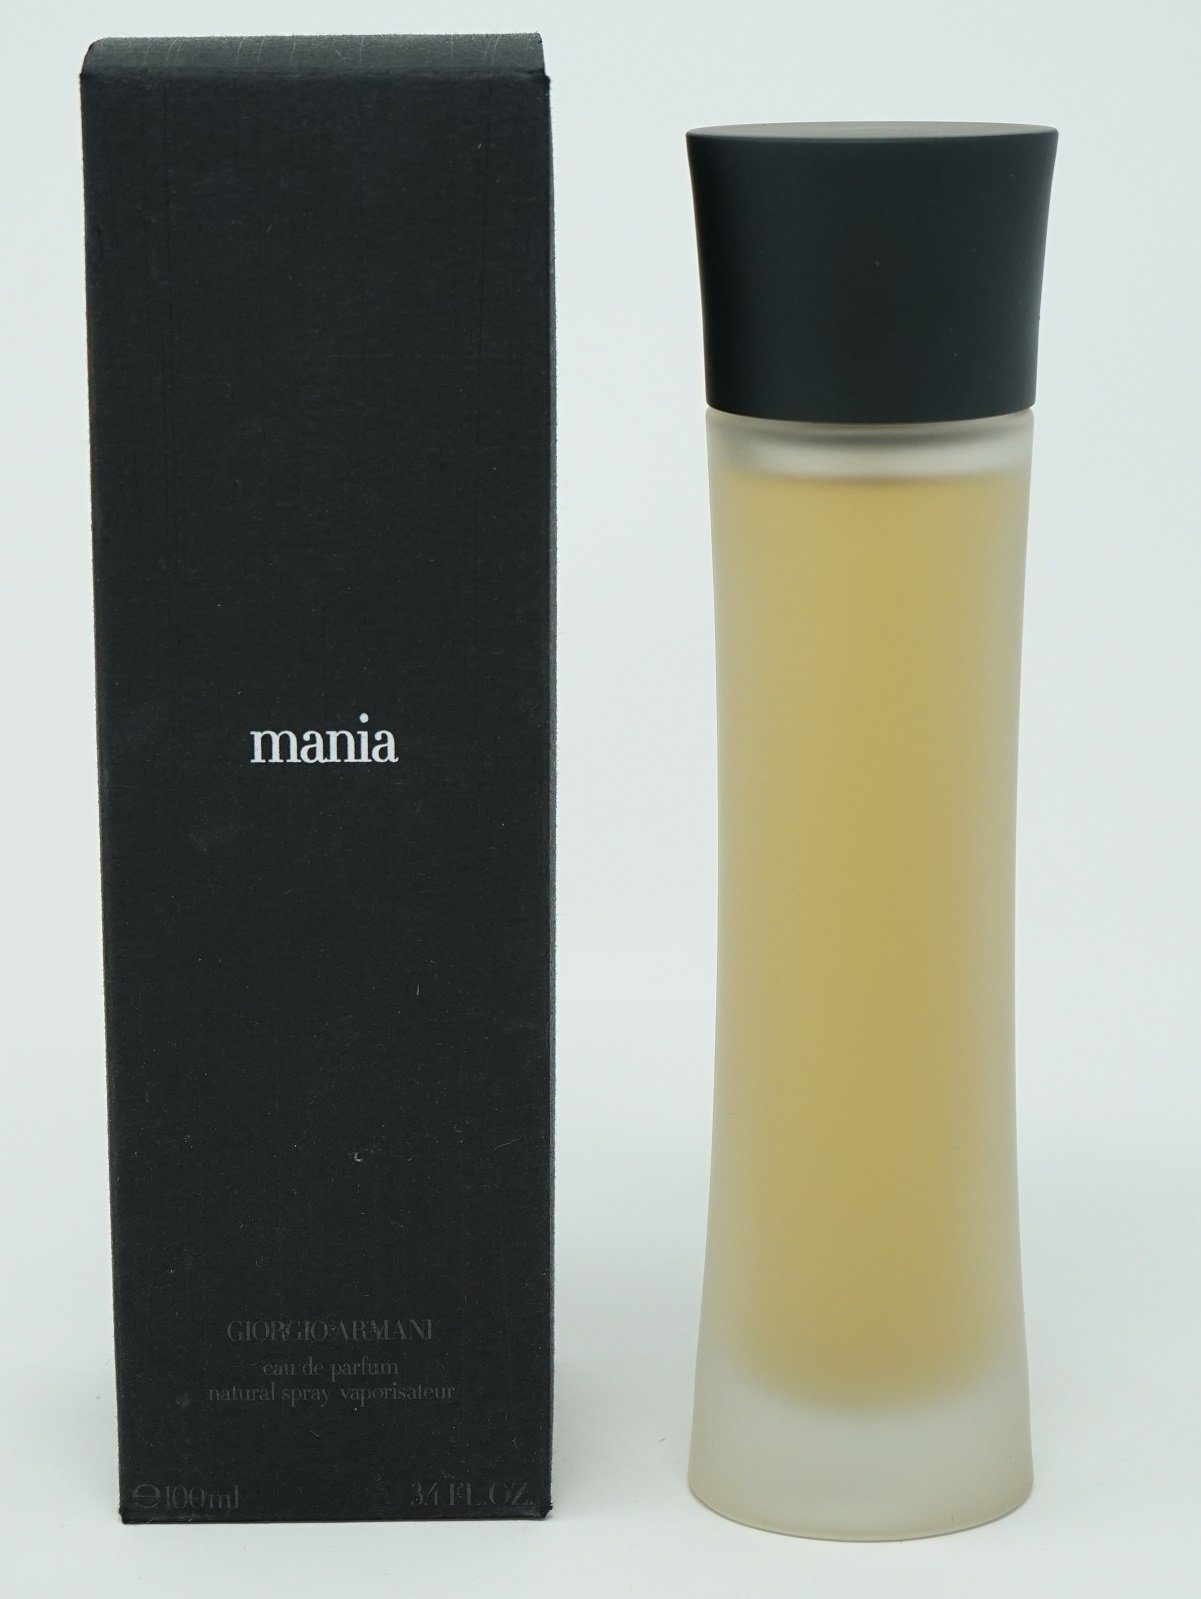 Giorgio Armani Eau de Parfum Giorgio Armani Mania (Black) Woman 100 ml Eau de Parfum EdP Spray